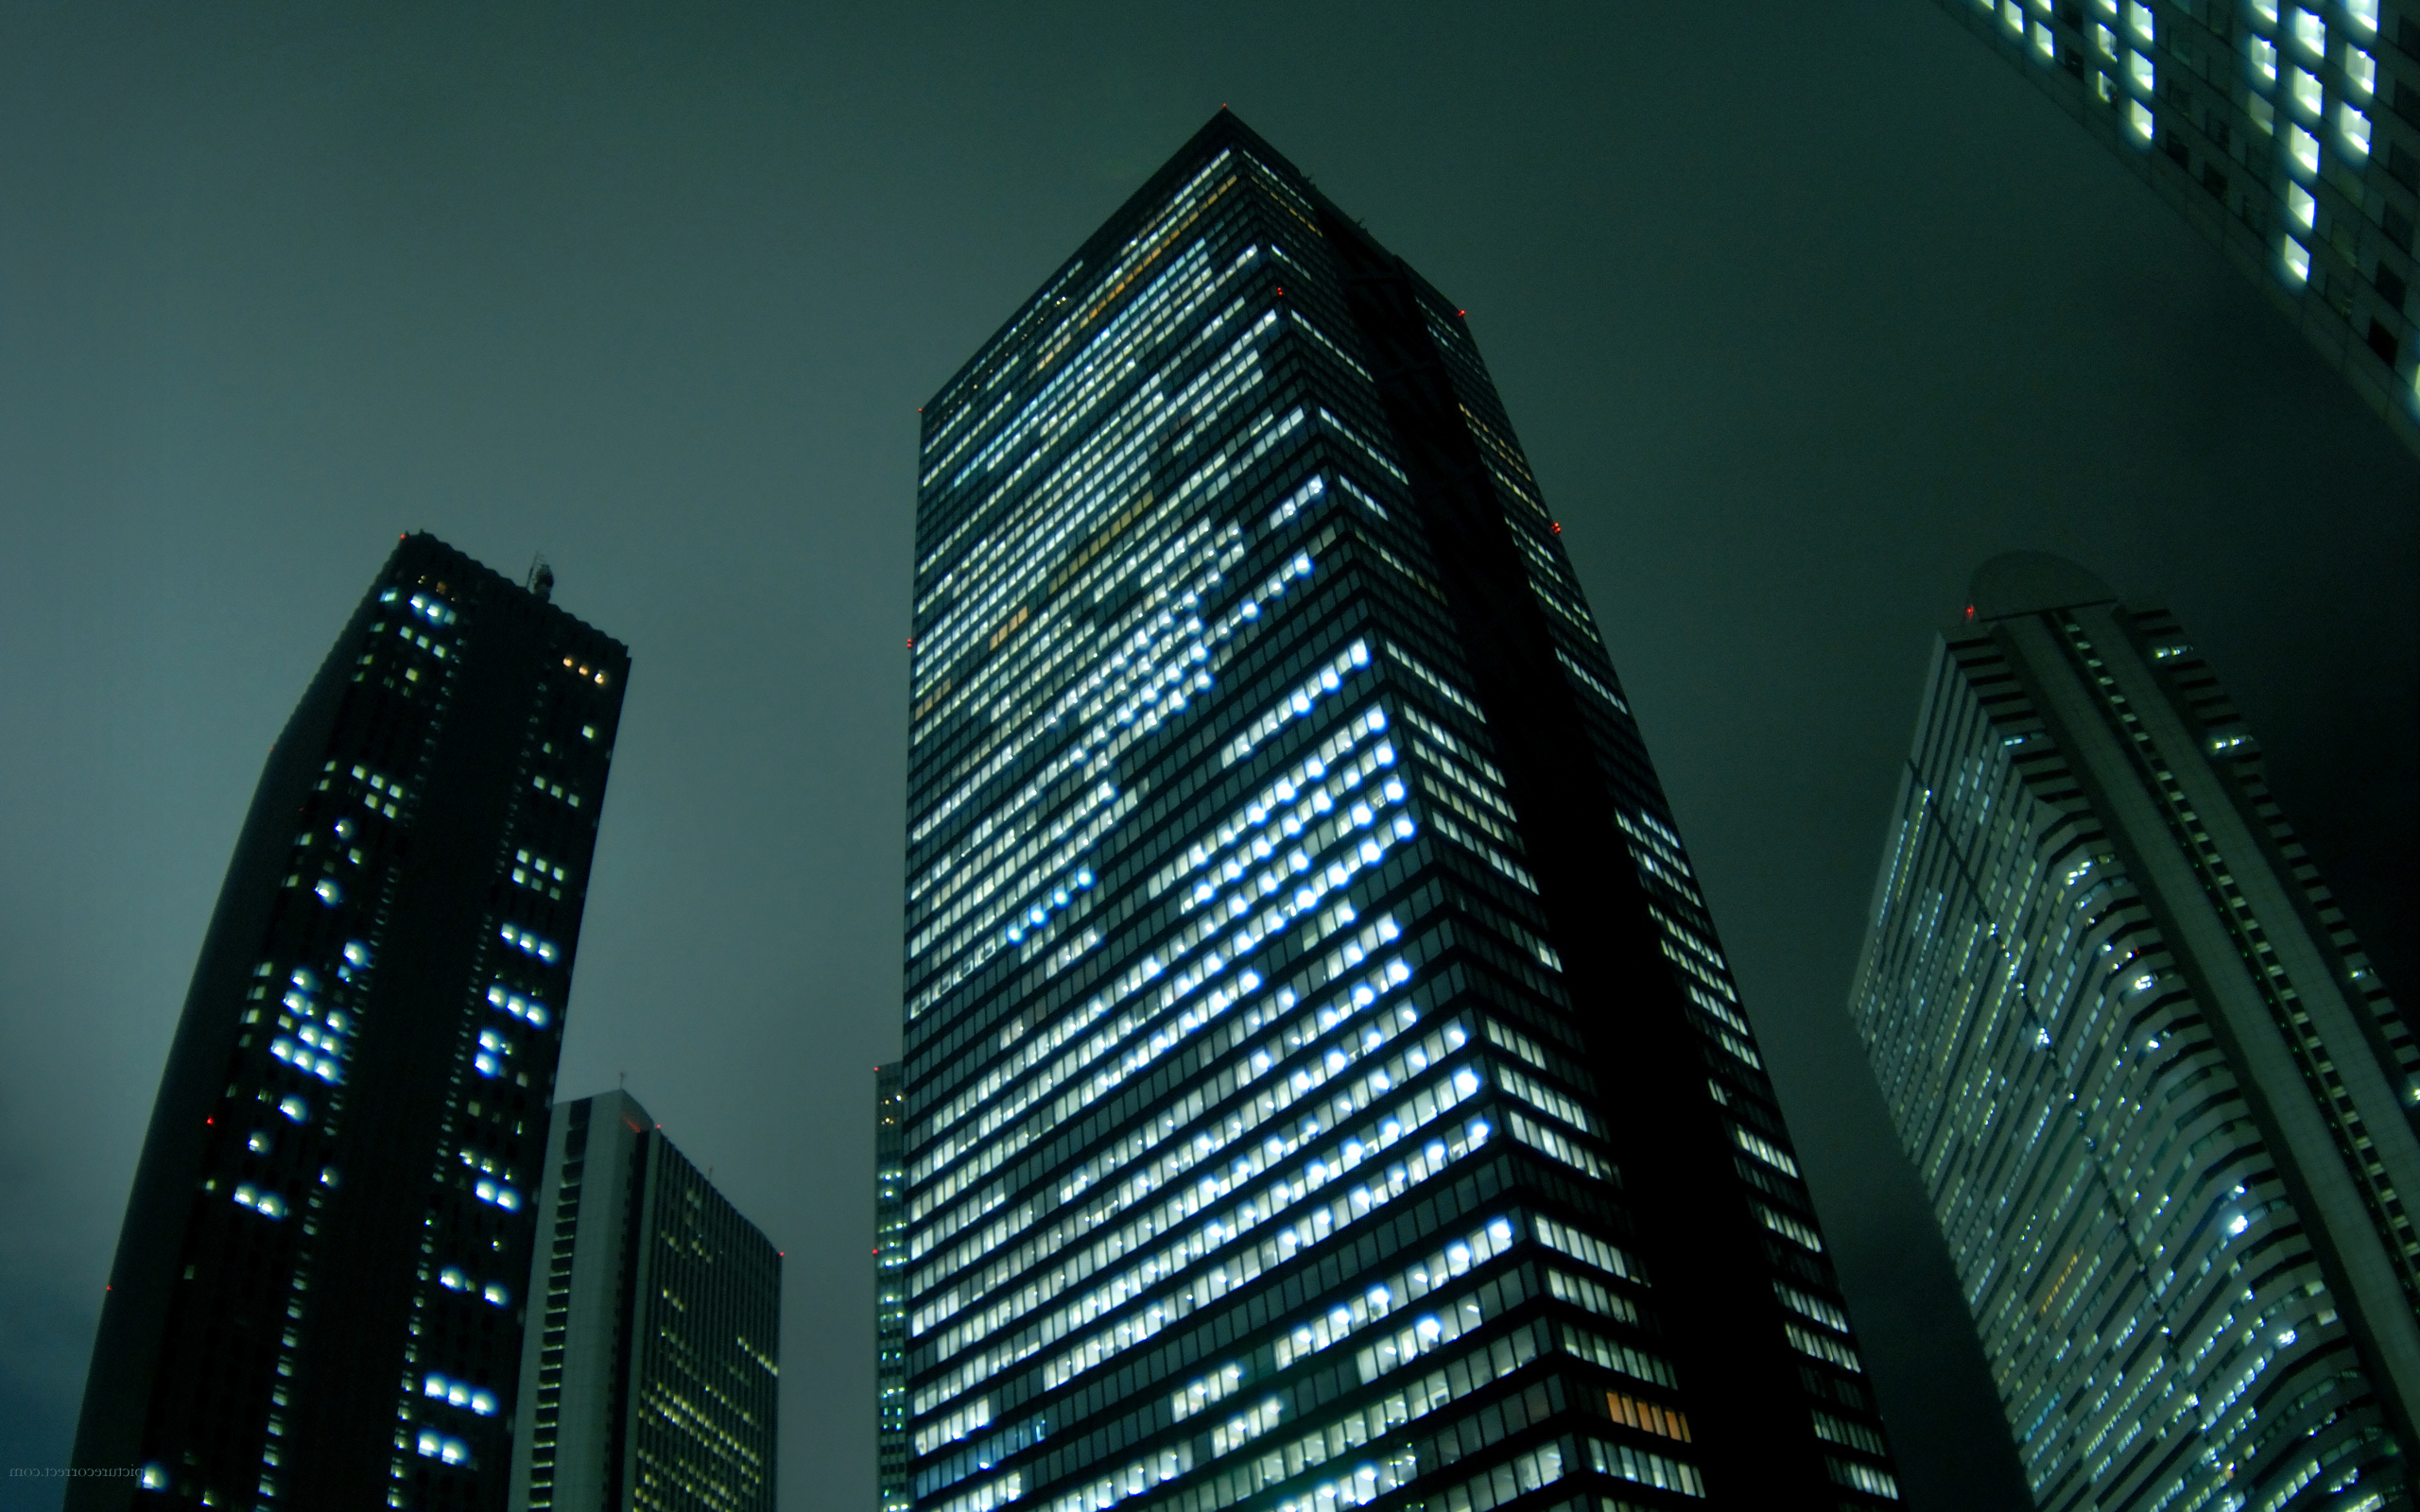 night, skyscrapers, cities - desktop wallpaper